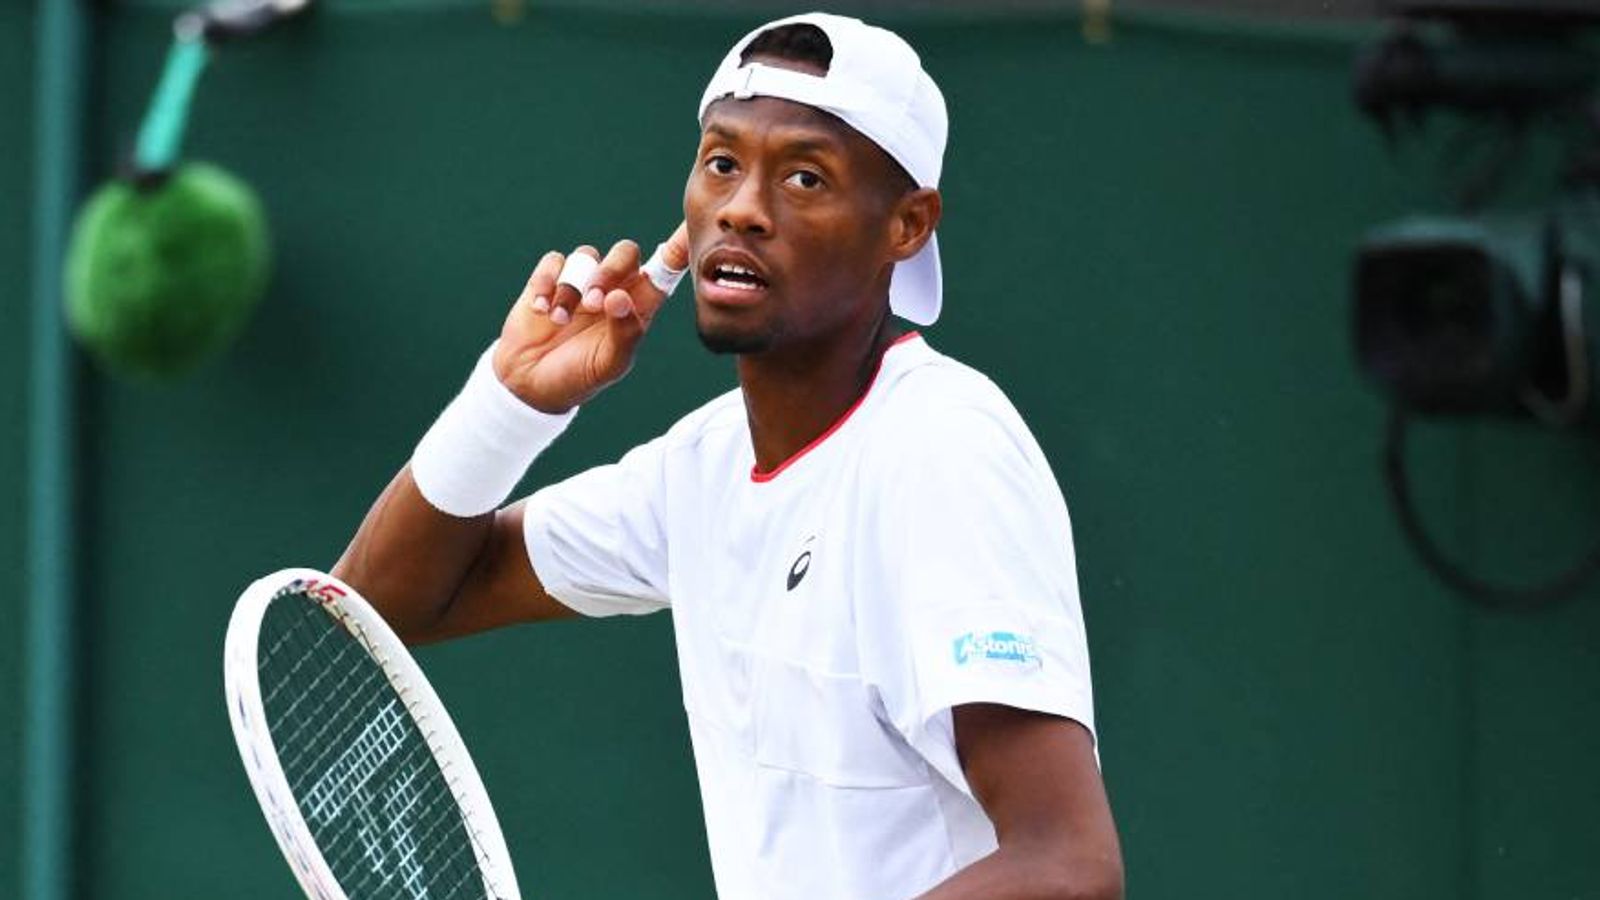 Wimbledon Christopher Eubanks verzaubert das Publikum Tennis News Sky Sport